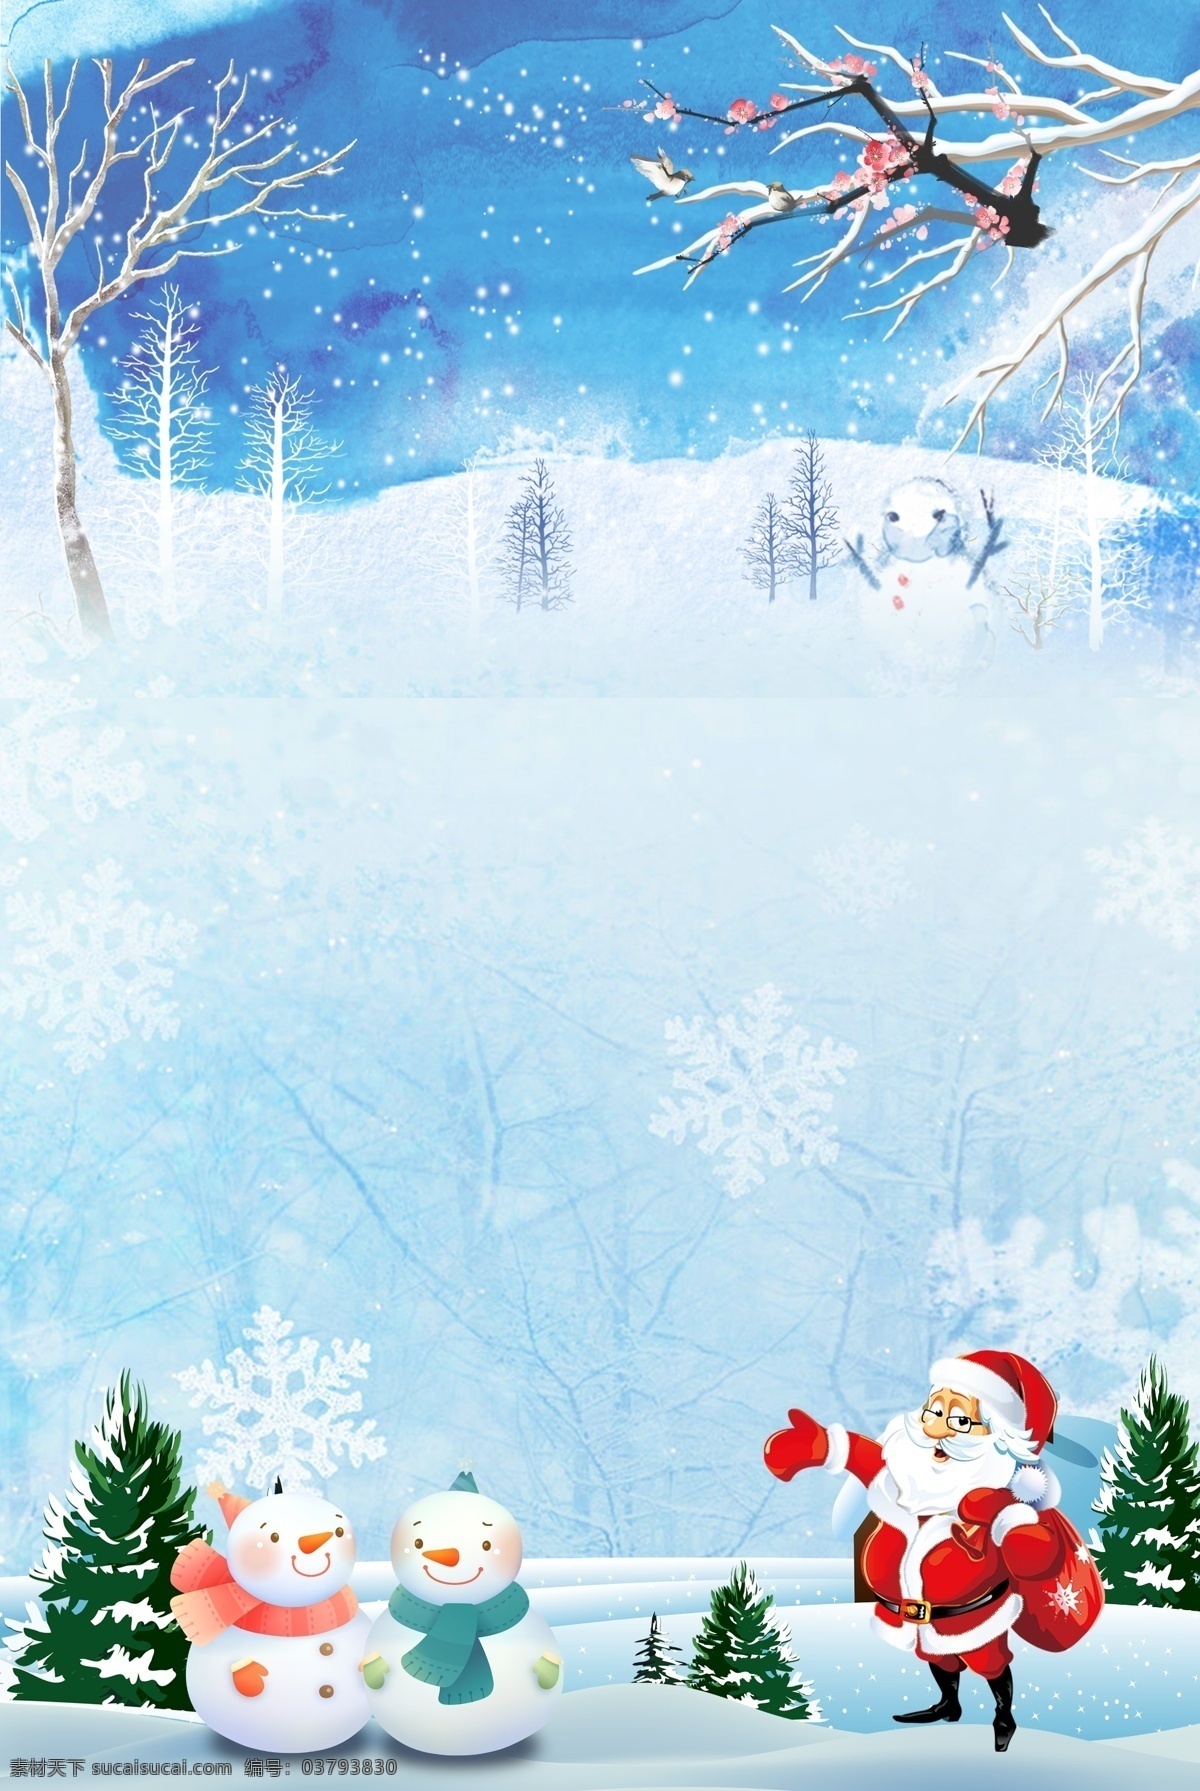 雪地 冬天 色 圣诞节 宣传 背景 圣诞素材 圣诞节背景 圣诞树 卡通 圣诞活动 圣诞晚会背景 圣诞主题 圣诞图片 海报 童趣 手绘